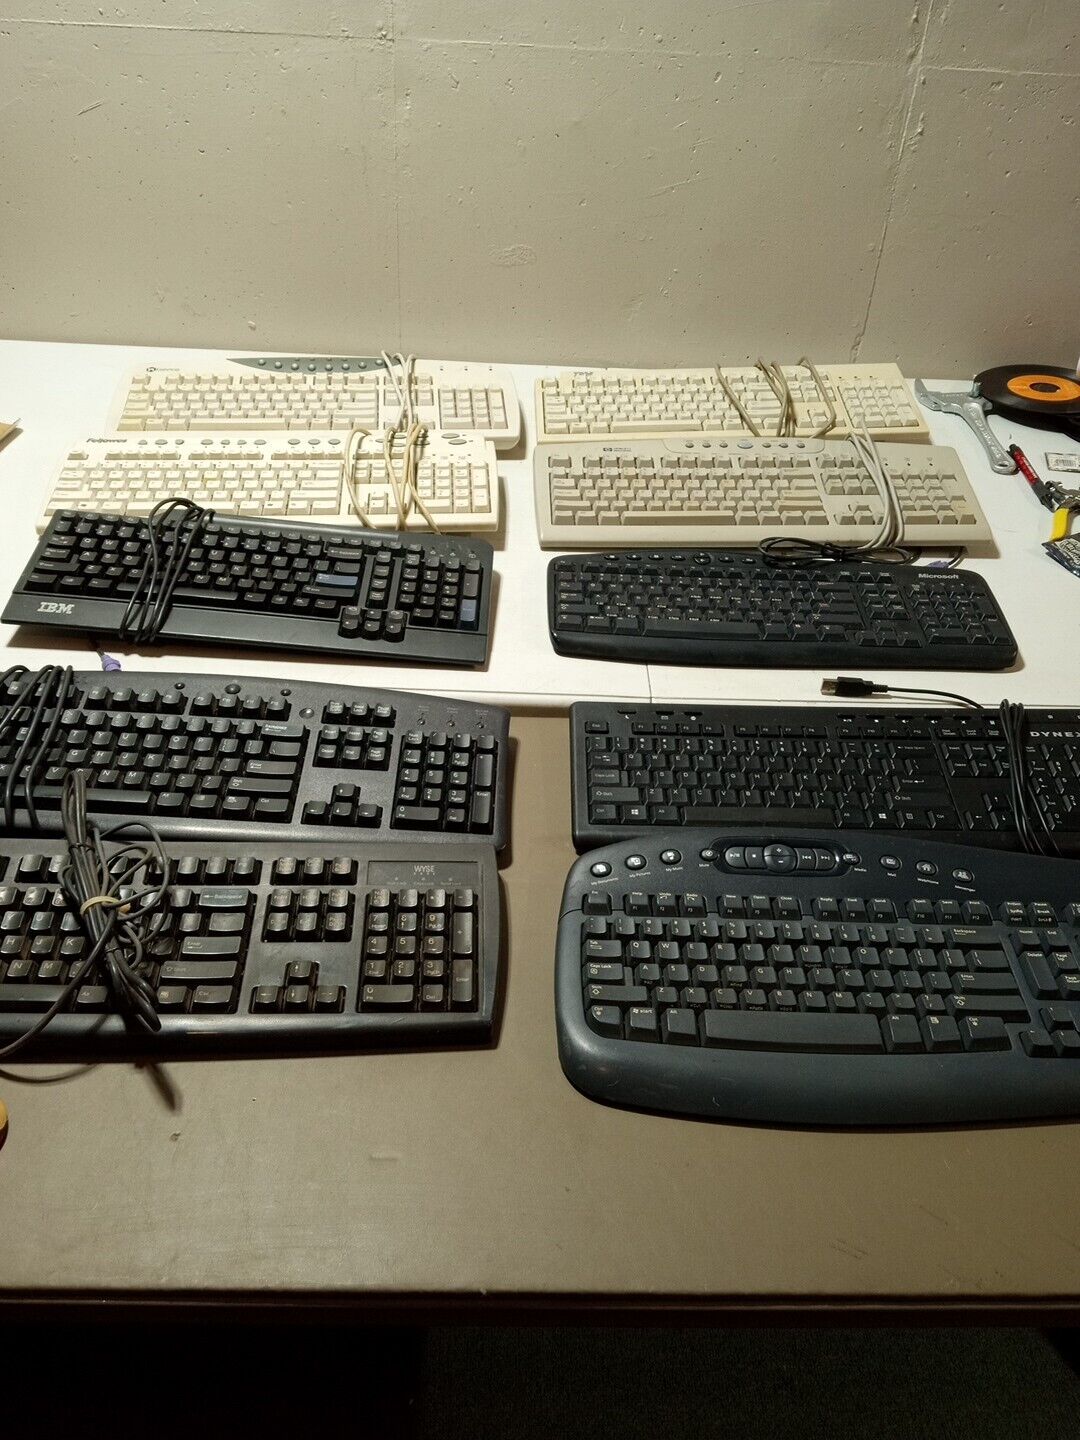 10 X Vintage Keyboards IBM, Gateway,Dell,Wyse, Hewlett Packard,Fellows,Dynex